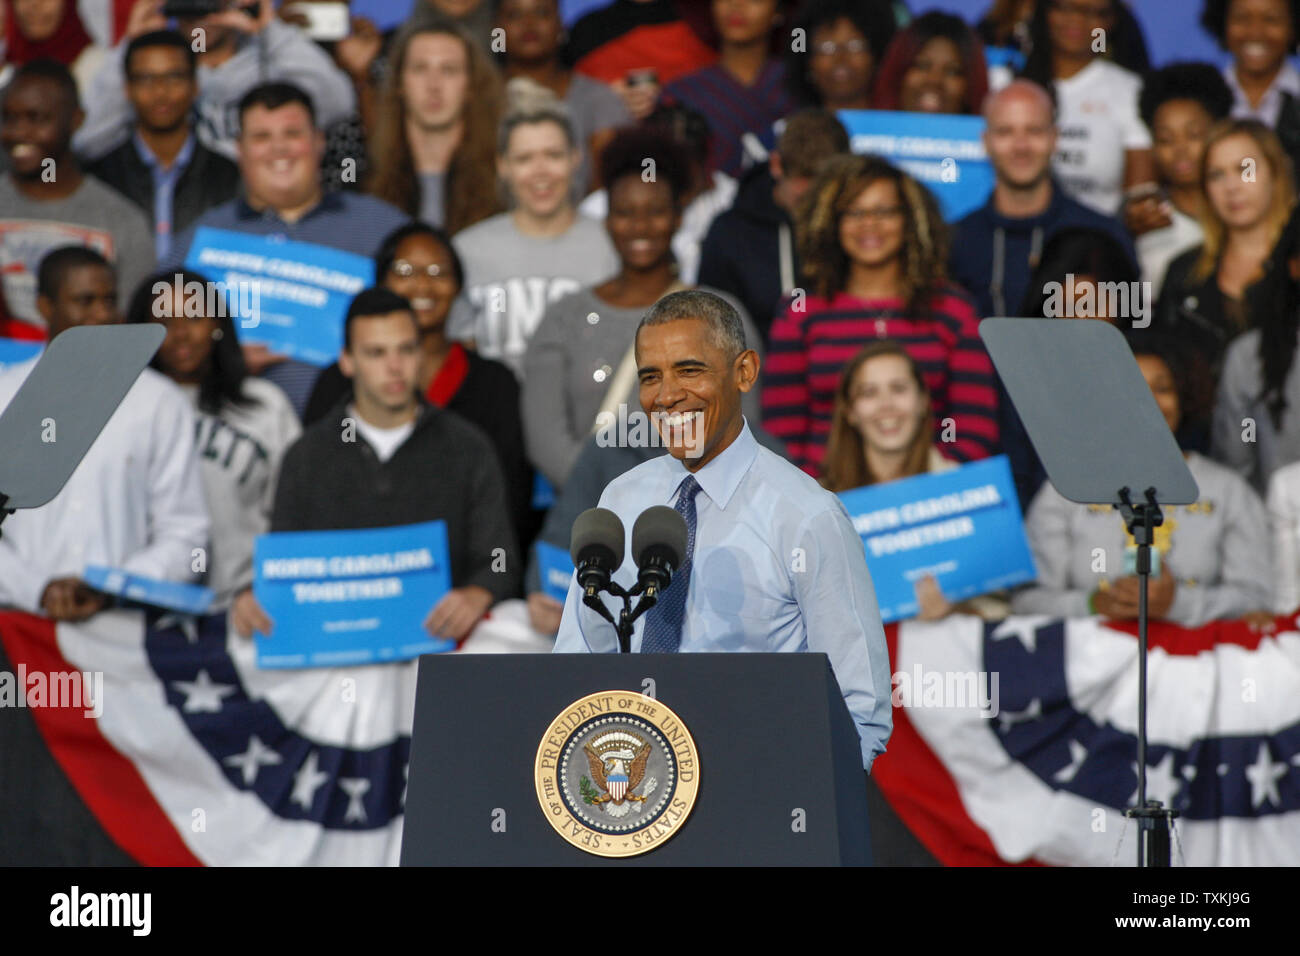 Präsident Barack Obama Kampagnen für den demokratischen Präsidentschaftskandidaten Hillary Clinton in Greensboro, North Carolina, am 11. Oktober 2016. Foto von Nell Redmond/UPI. Stockfoto